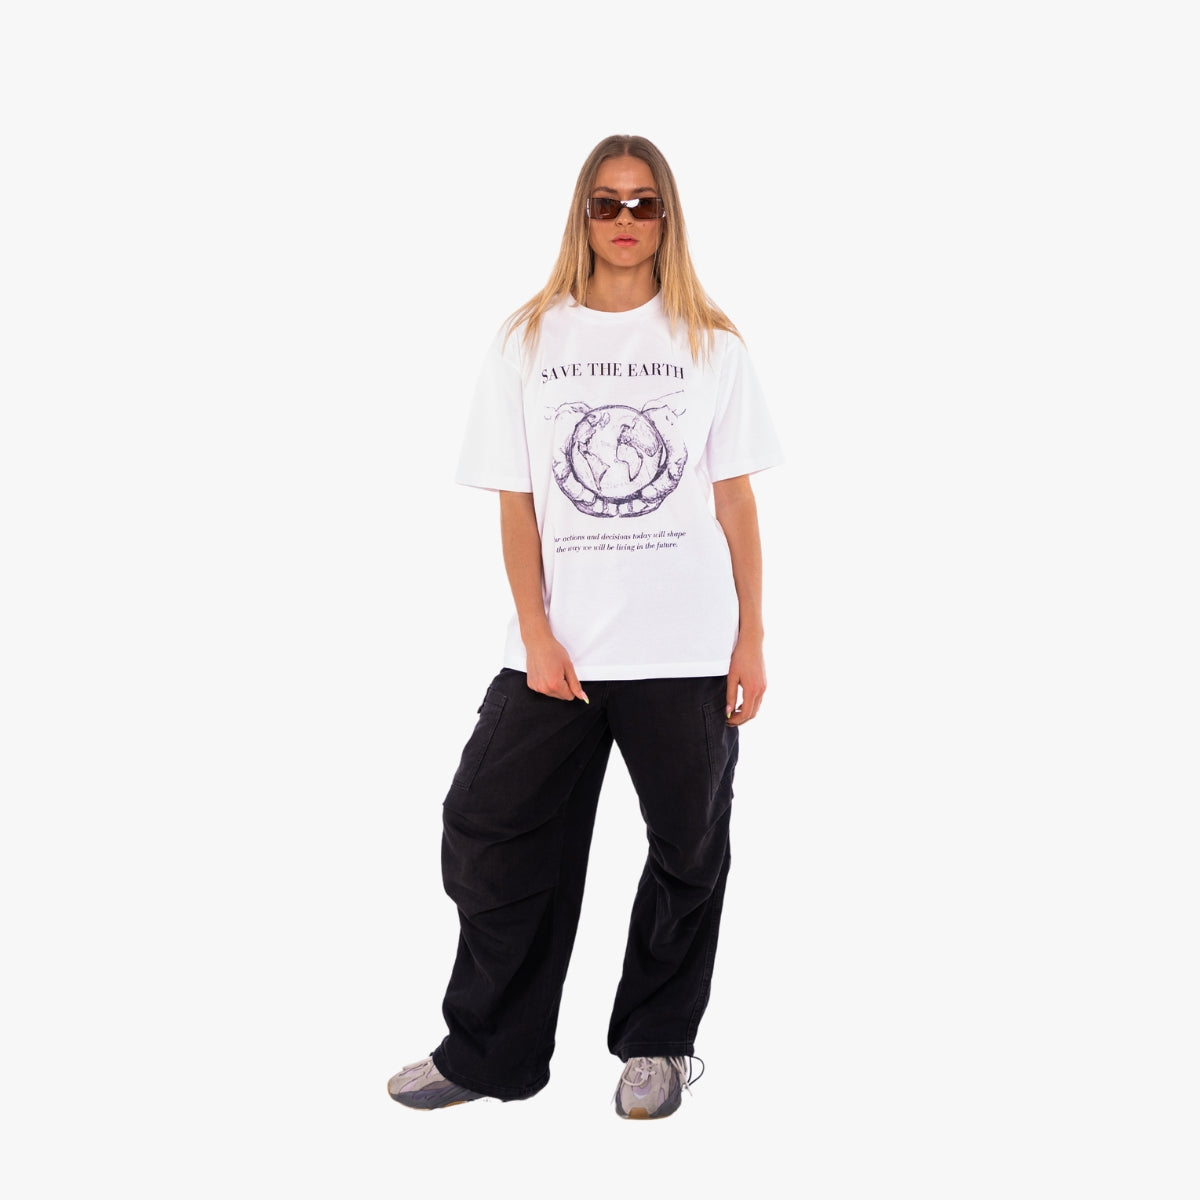 'SAVE OUR EARTH B&W' Organic Relaxed Shirt in der Farbe White als Komplettaufnahme vom Outfit getragen von einem weiblichen Model